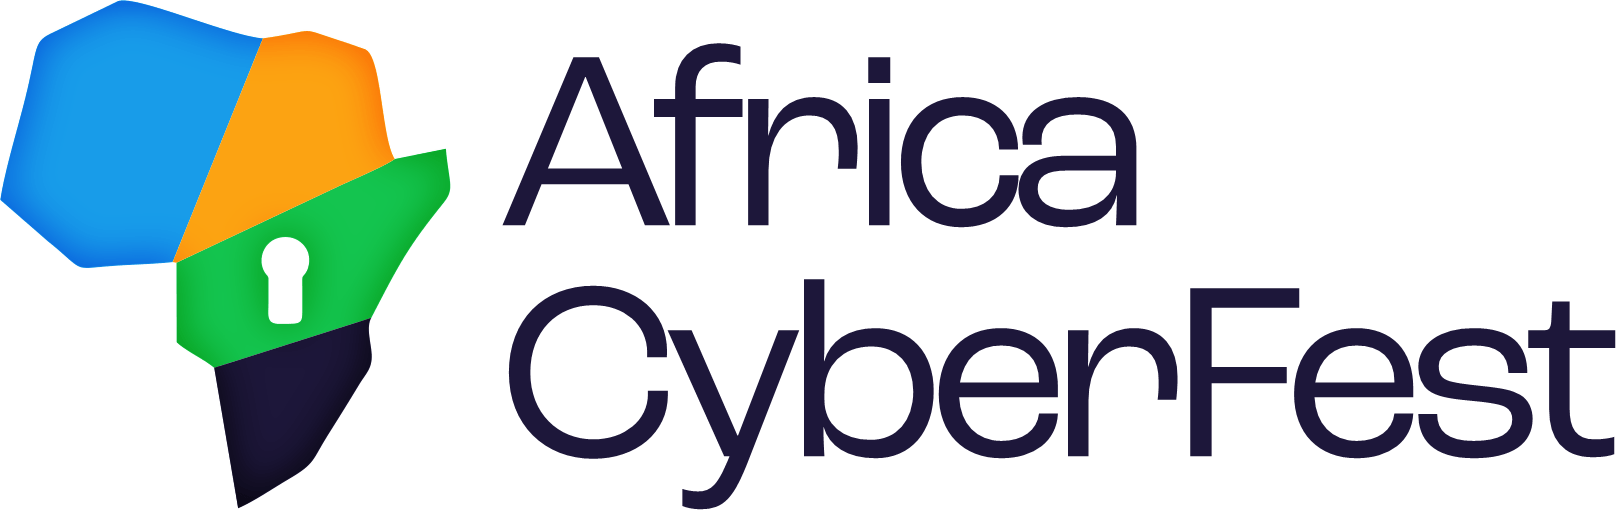 Africa Cybersecurity Festival | Africa CyberFest | #CyberFest